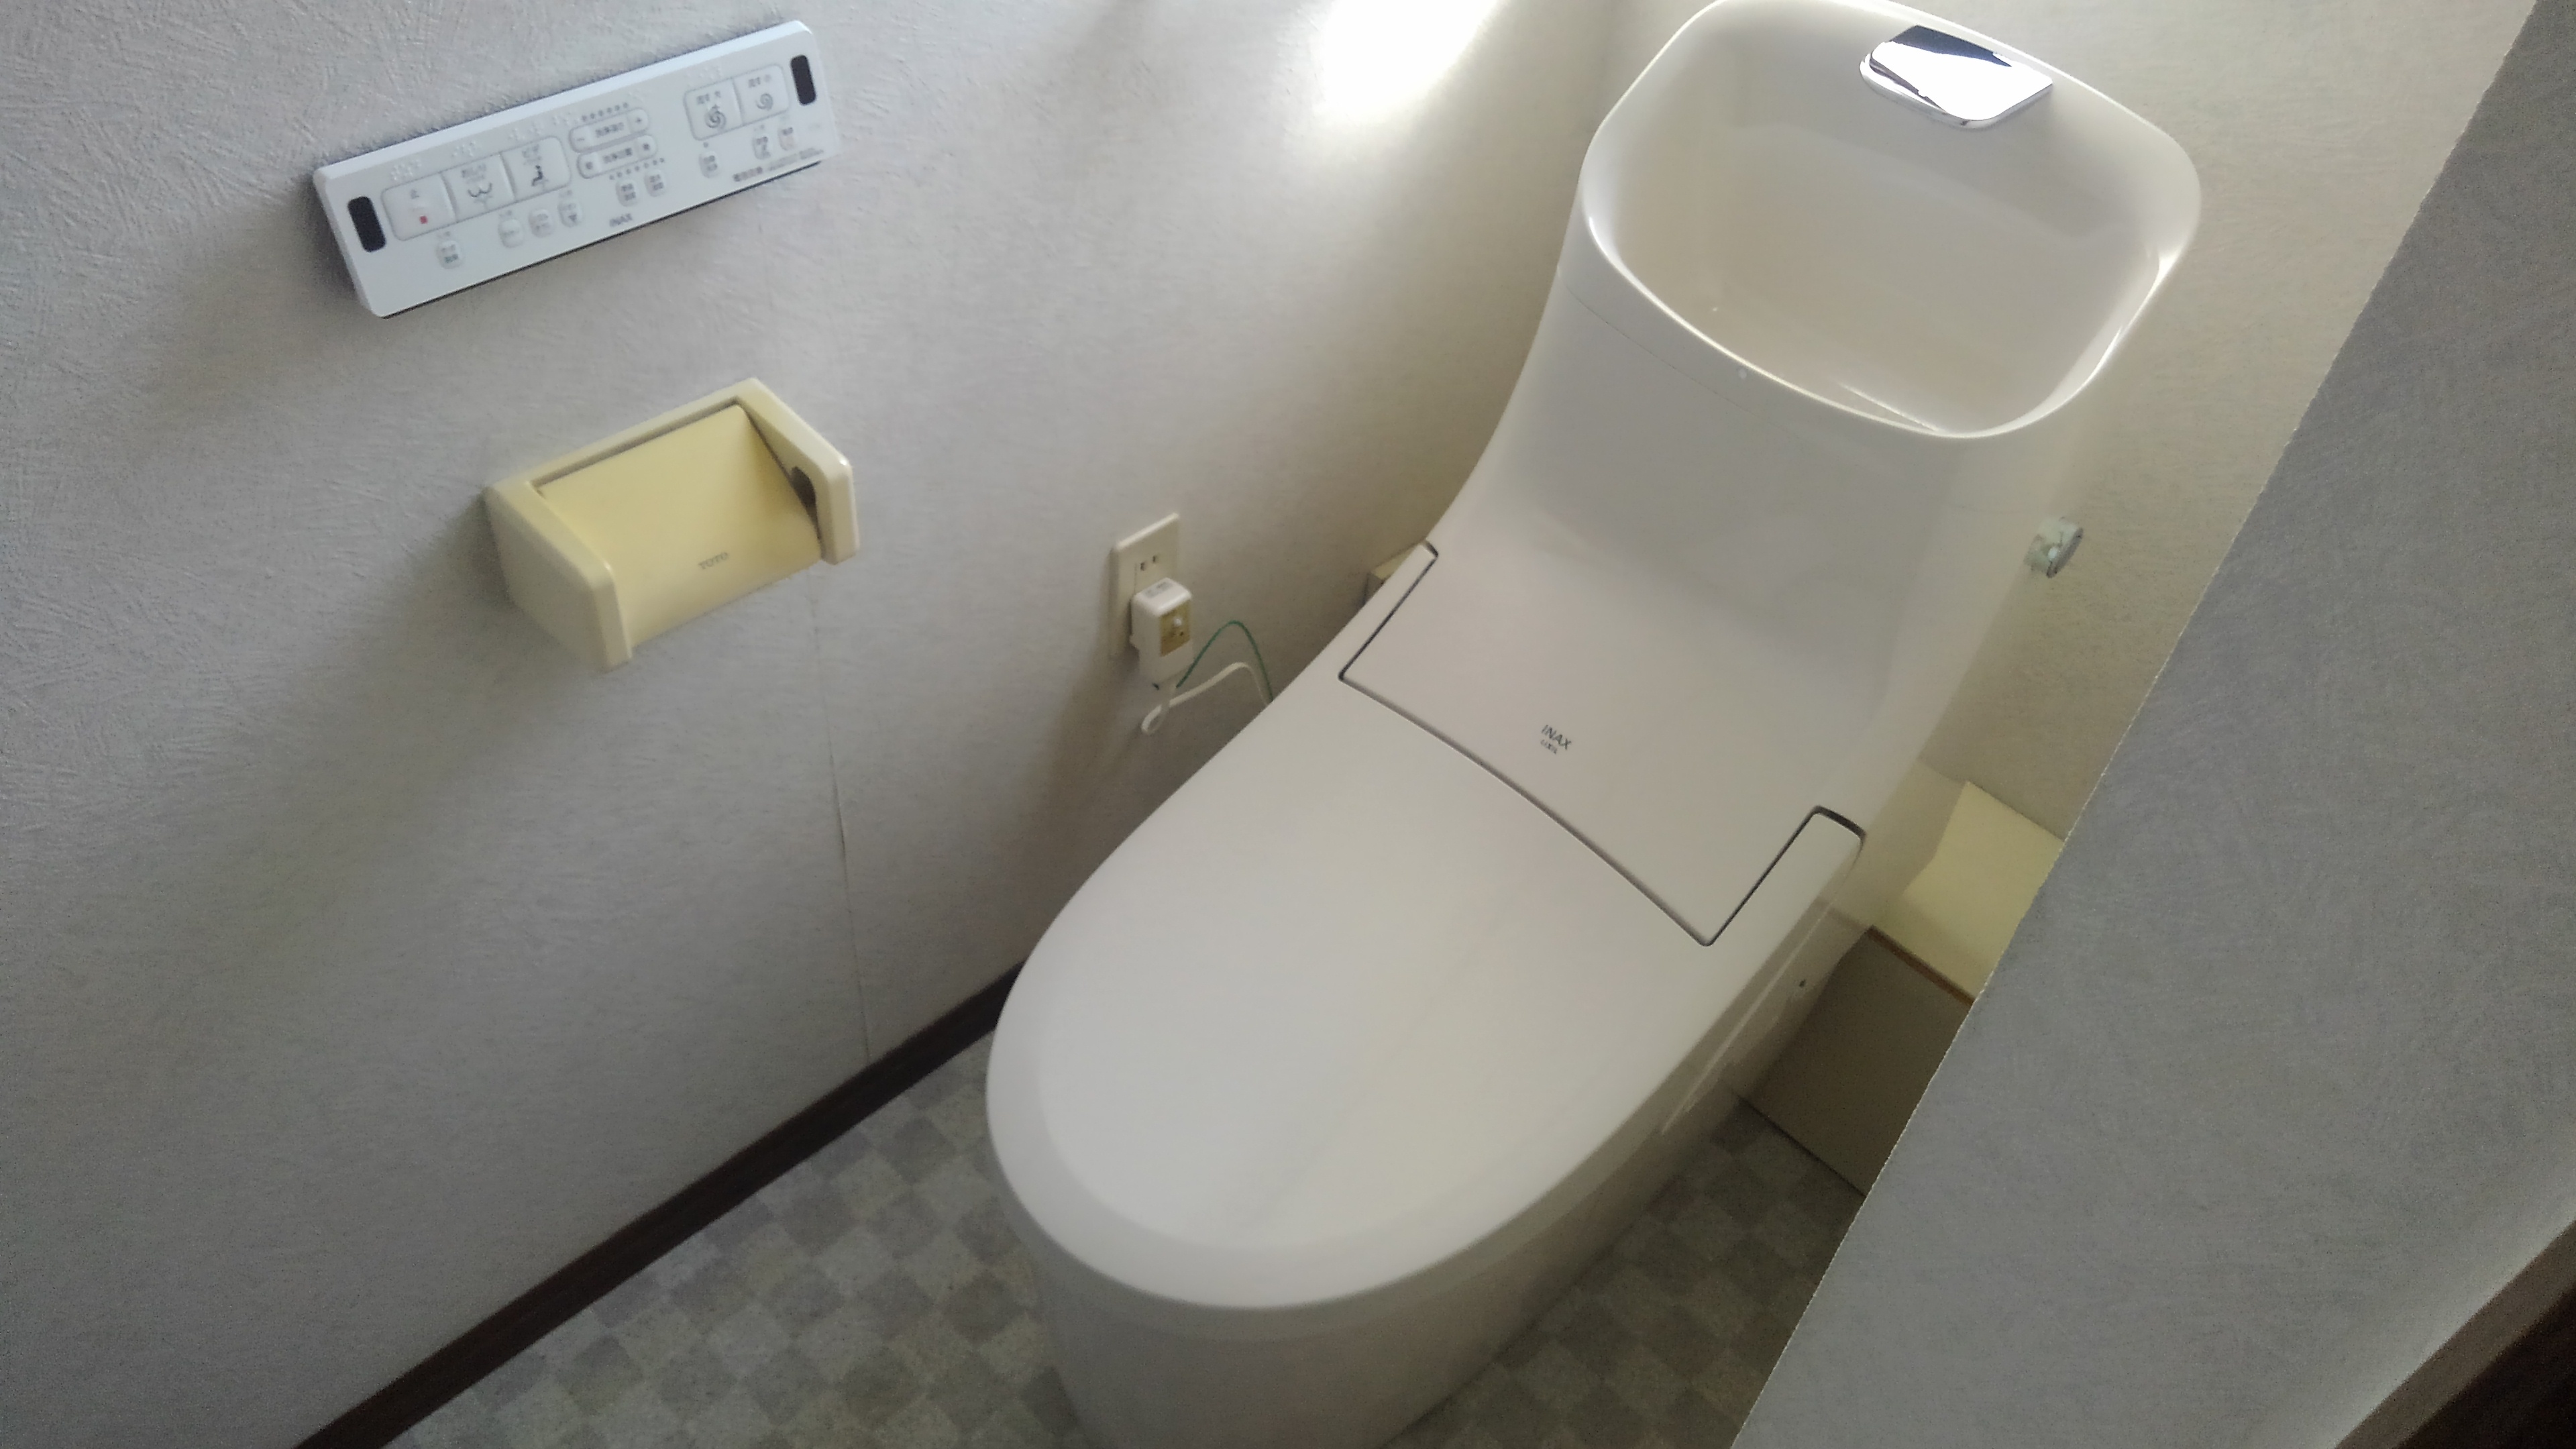 大阪市東住吉区　戸建て住宅の洋式トイレ取替リフォーム